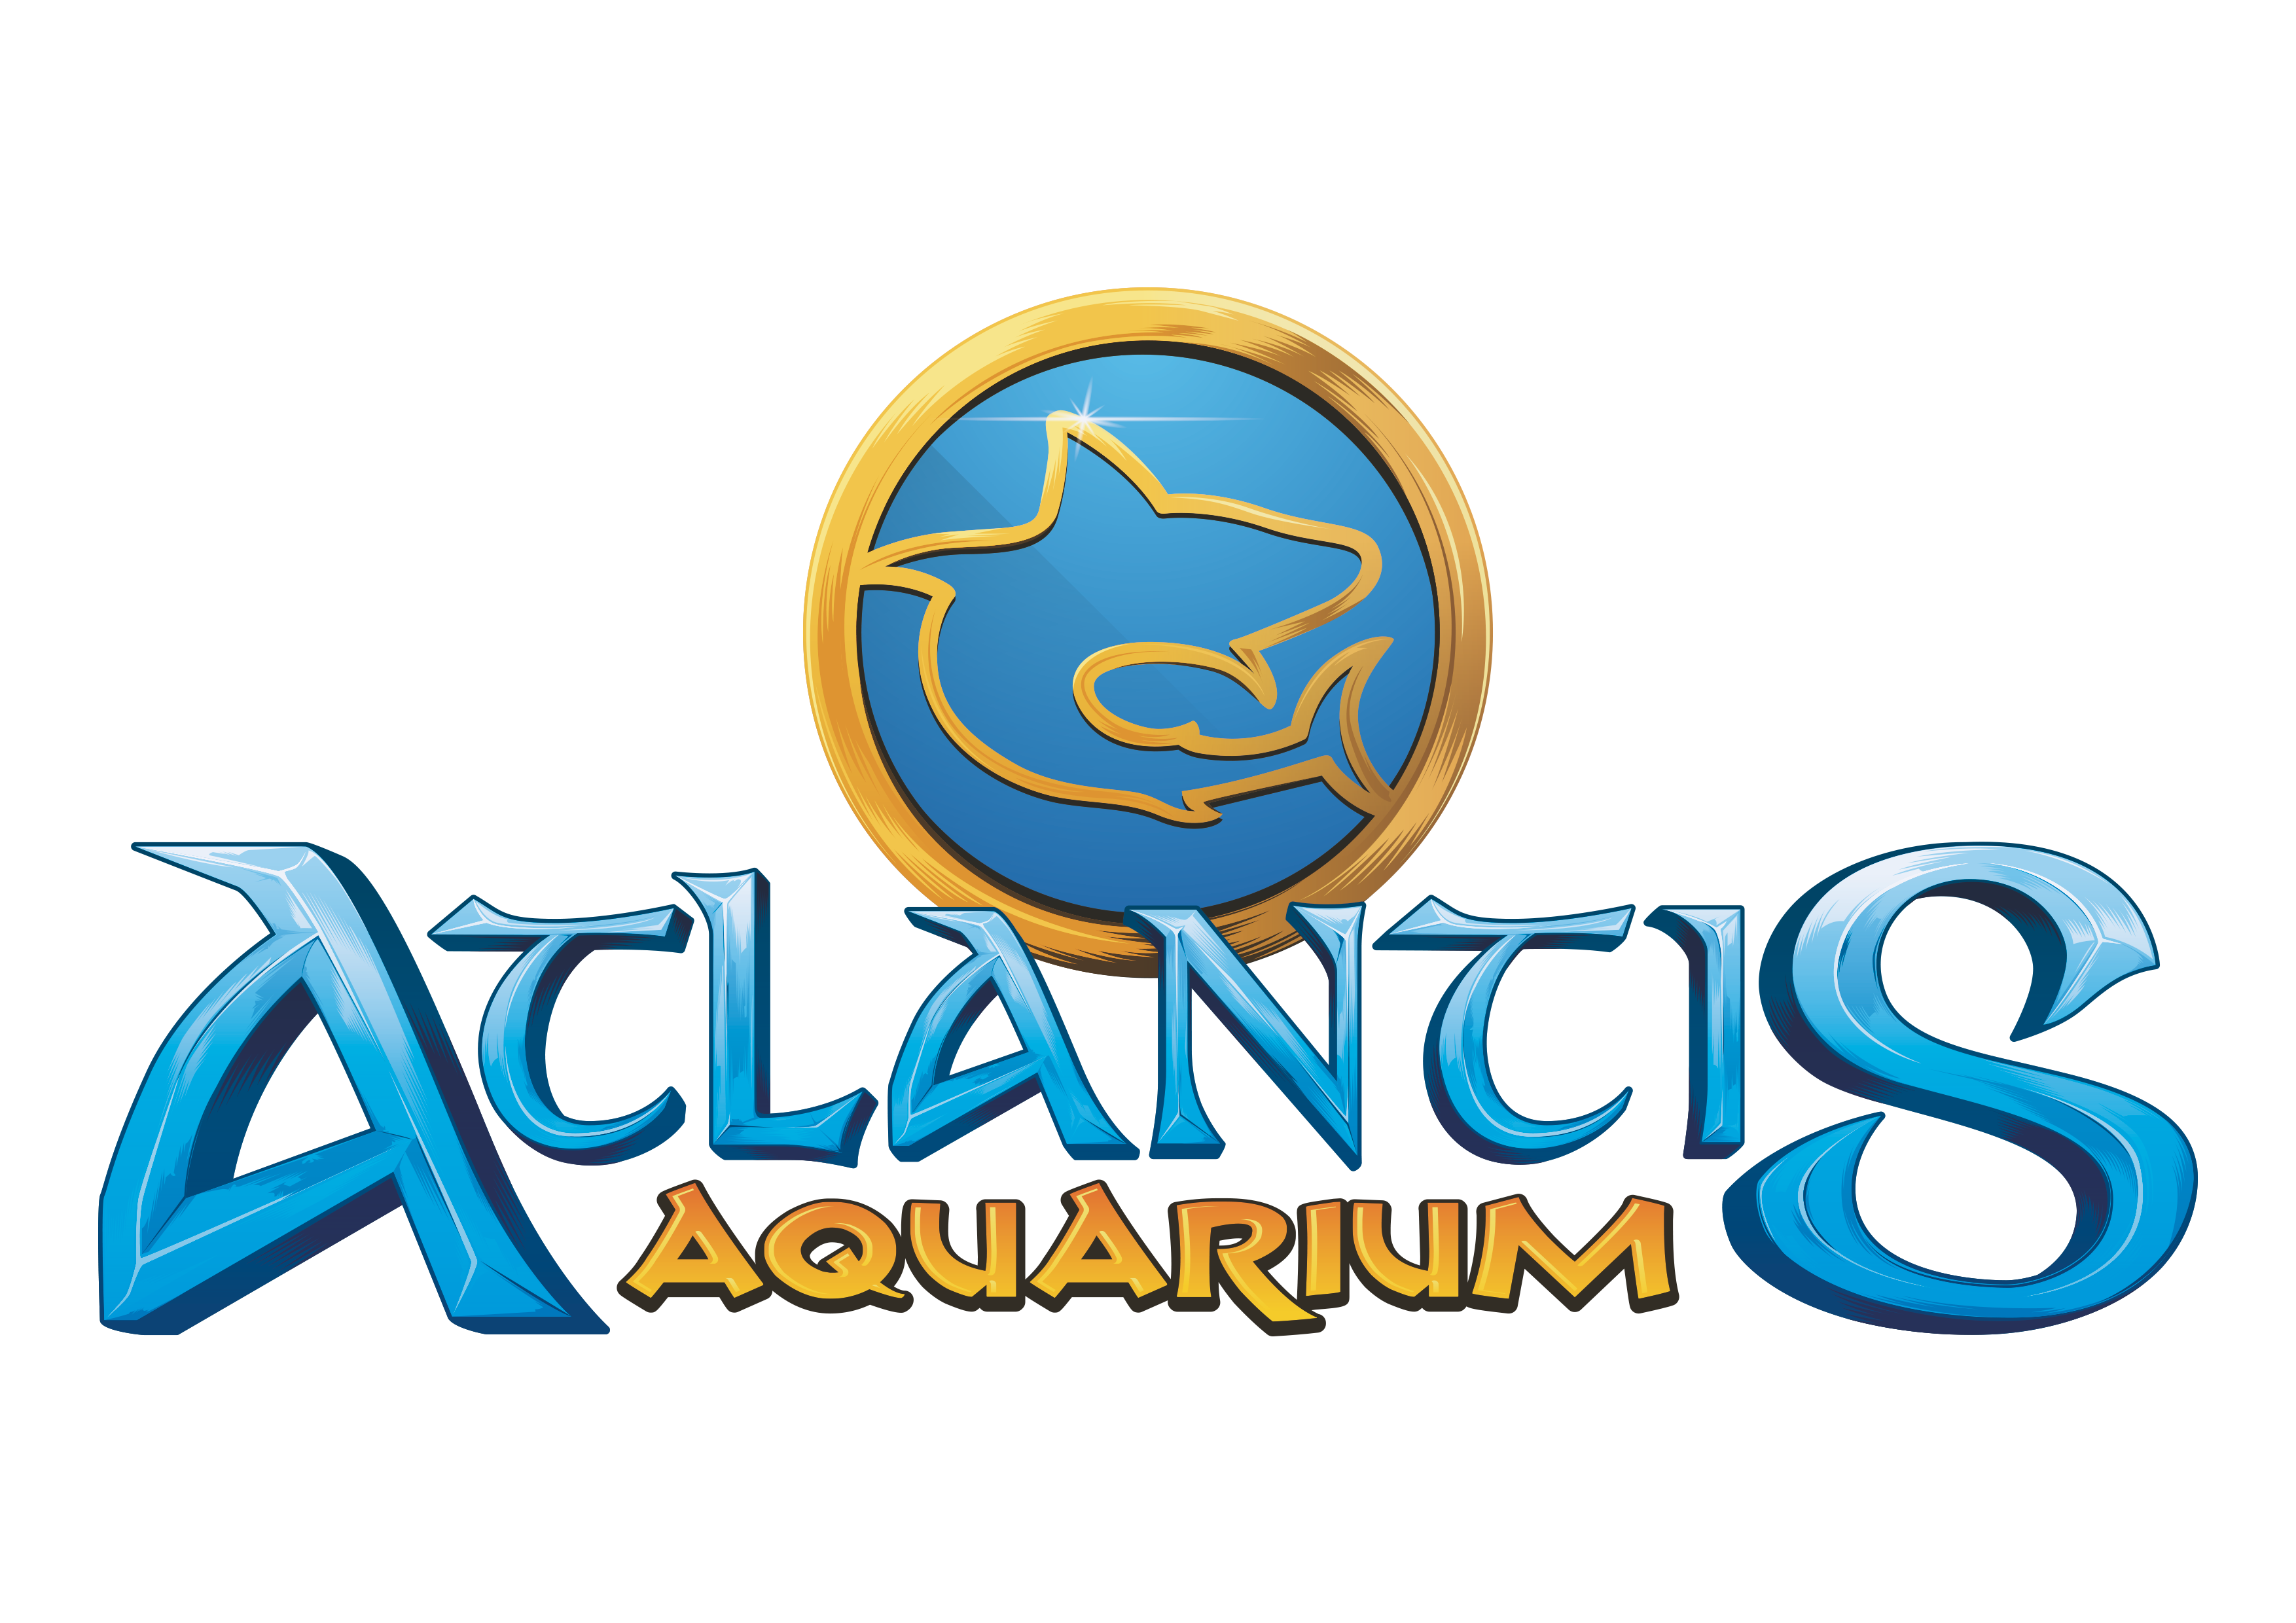 logo atlantis